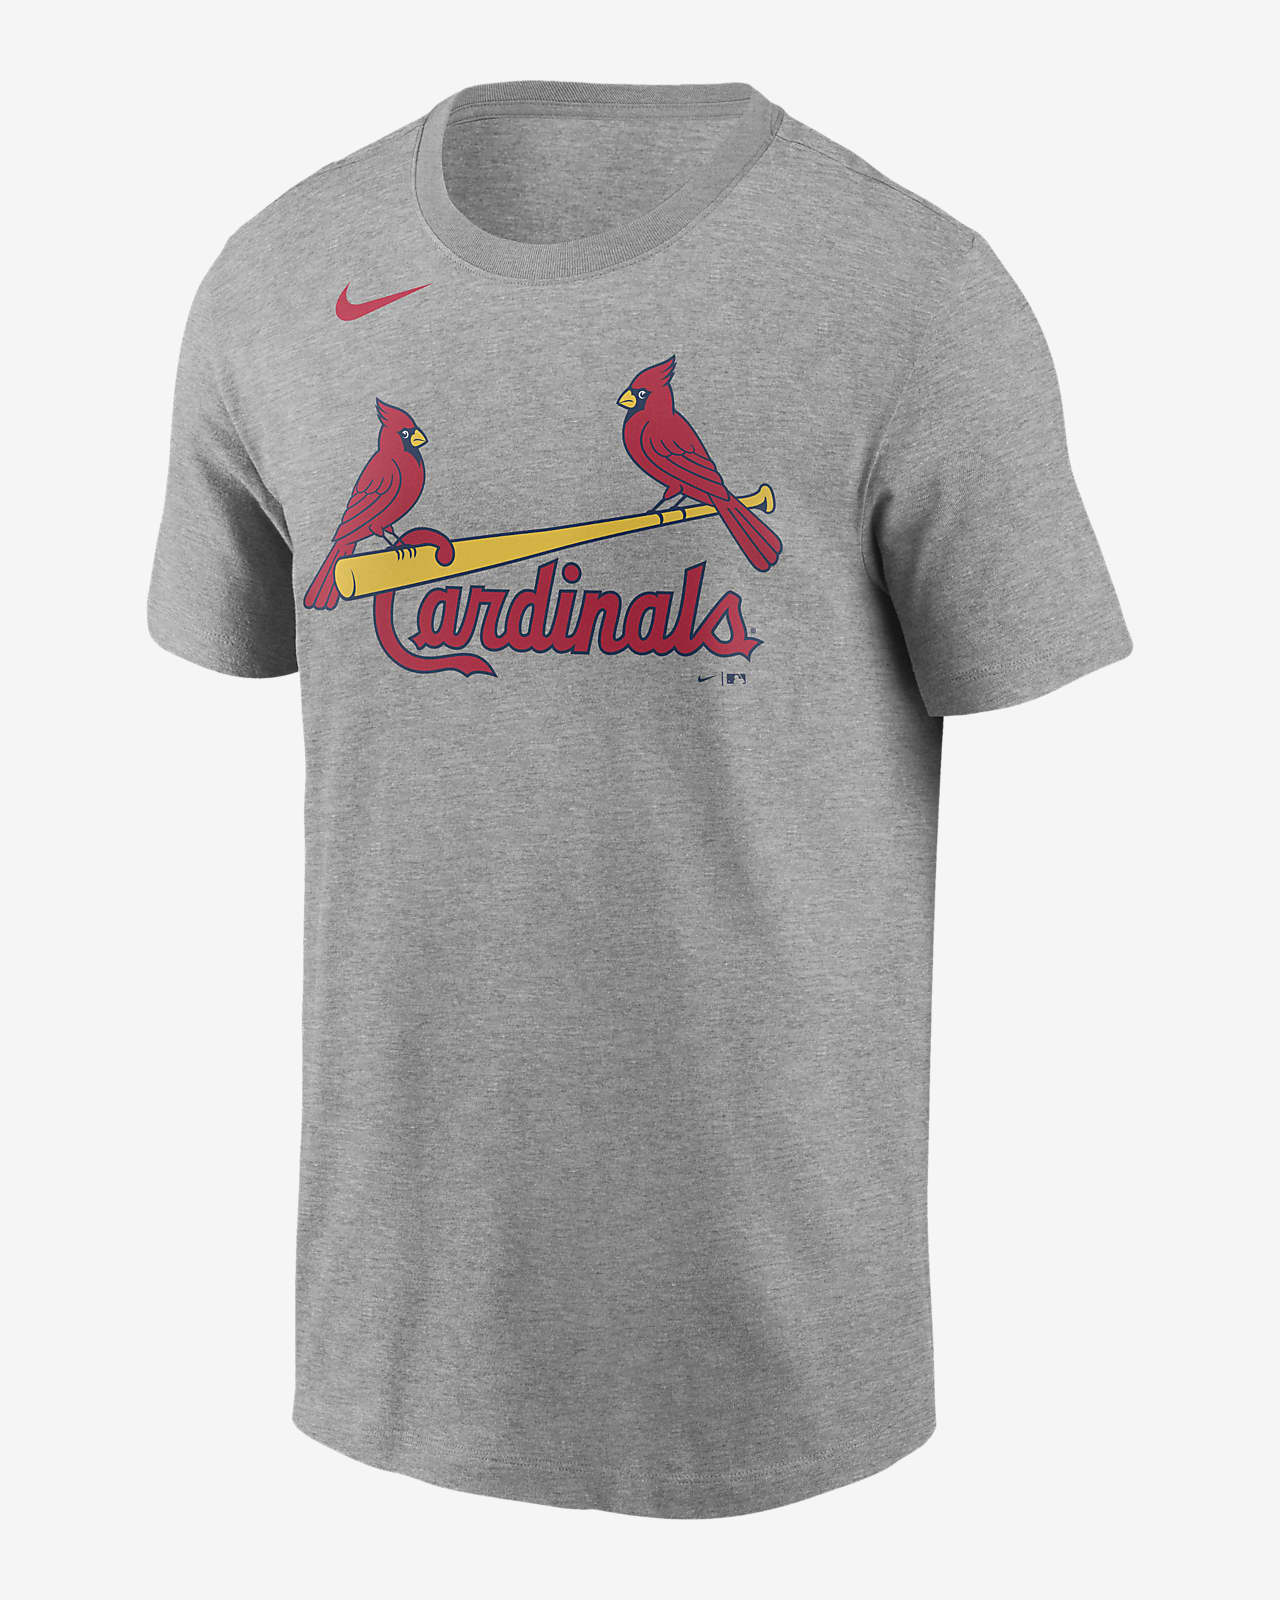 nike st louis cardinals shirt